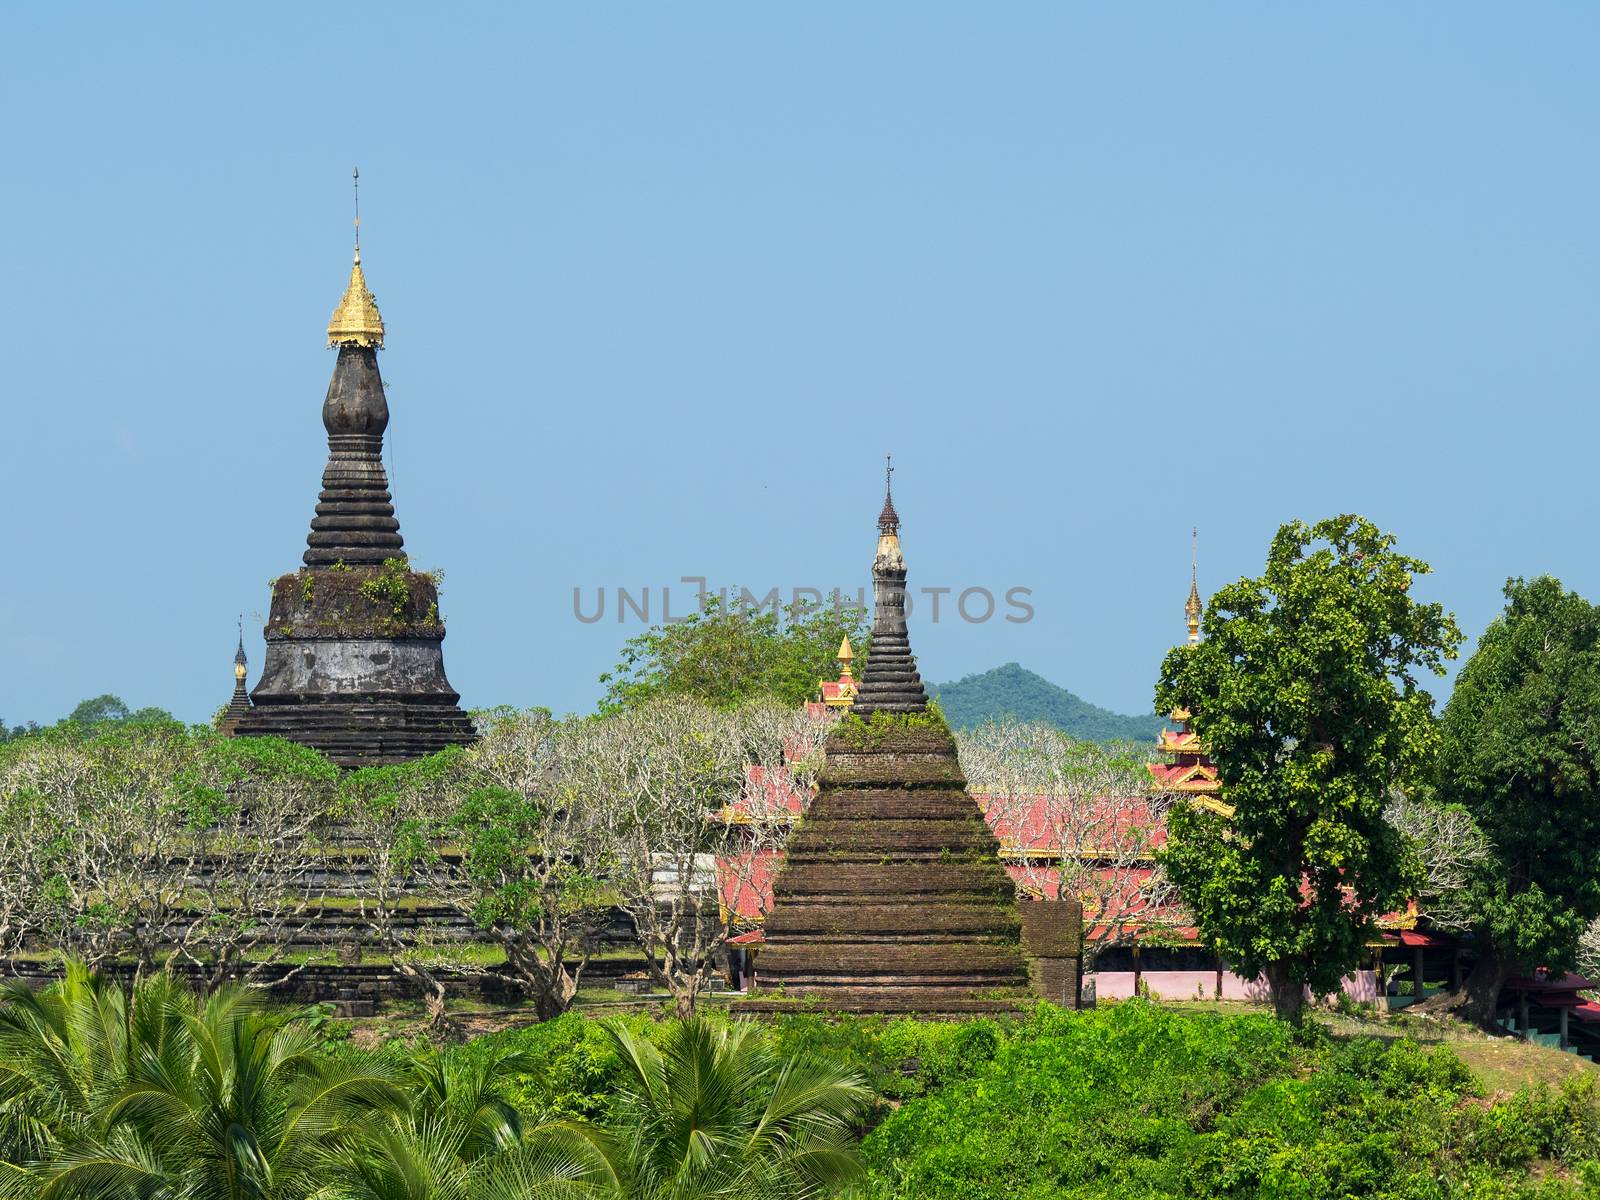 The Zina Man Aung Pagoda in Mrauk U, the Rakhine State of Myanmar.